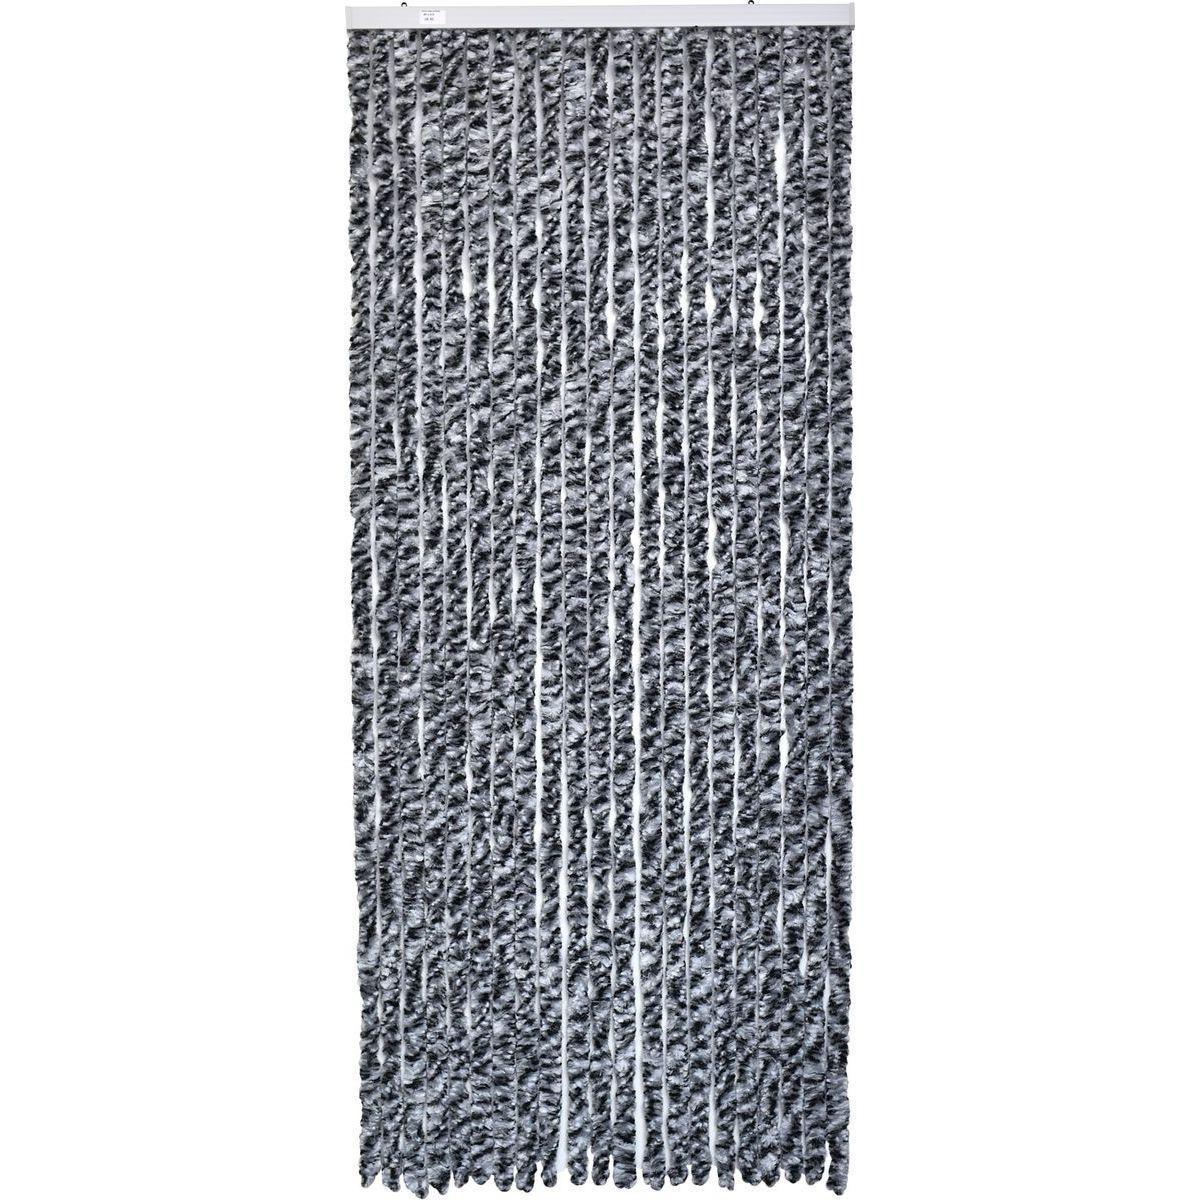 Rideau de porte en chenille - 120 x 210 cm - Gris noir chiné